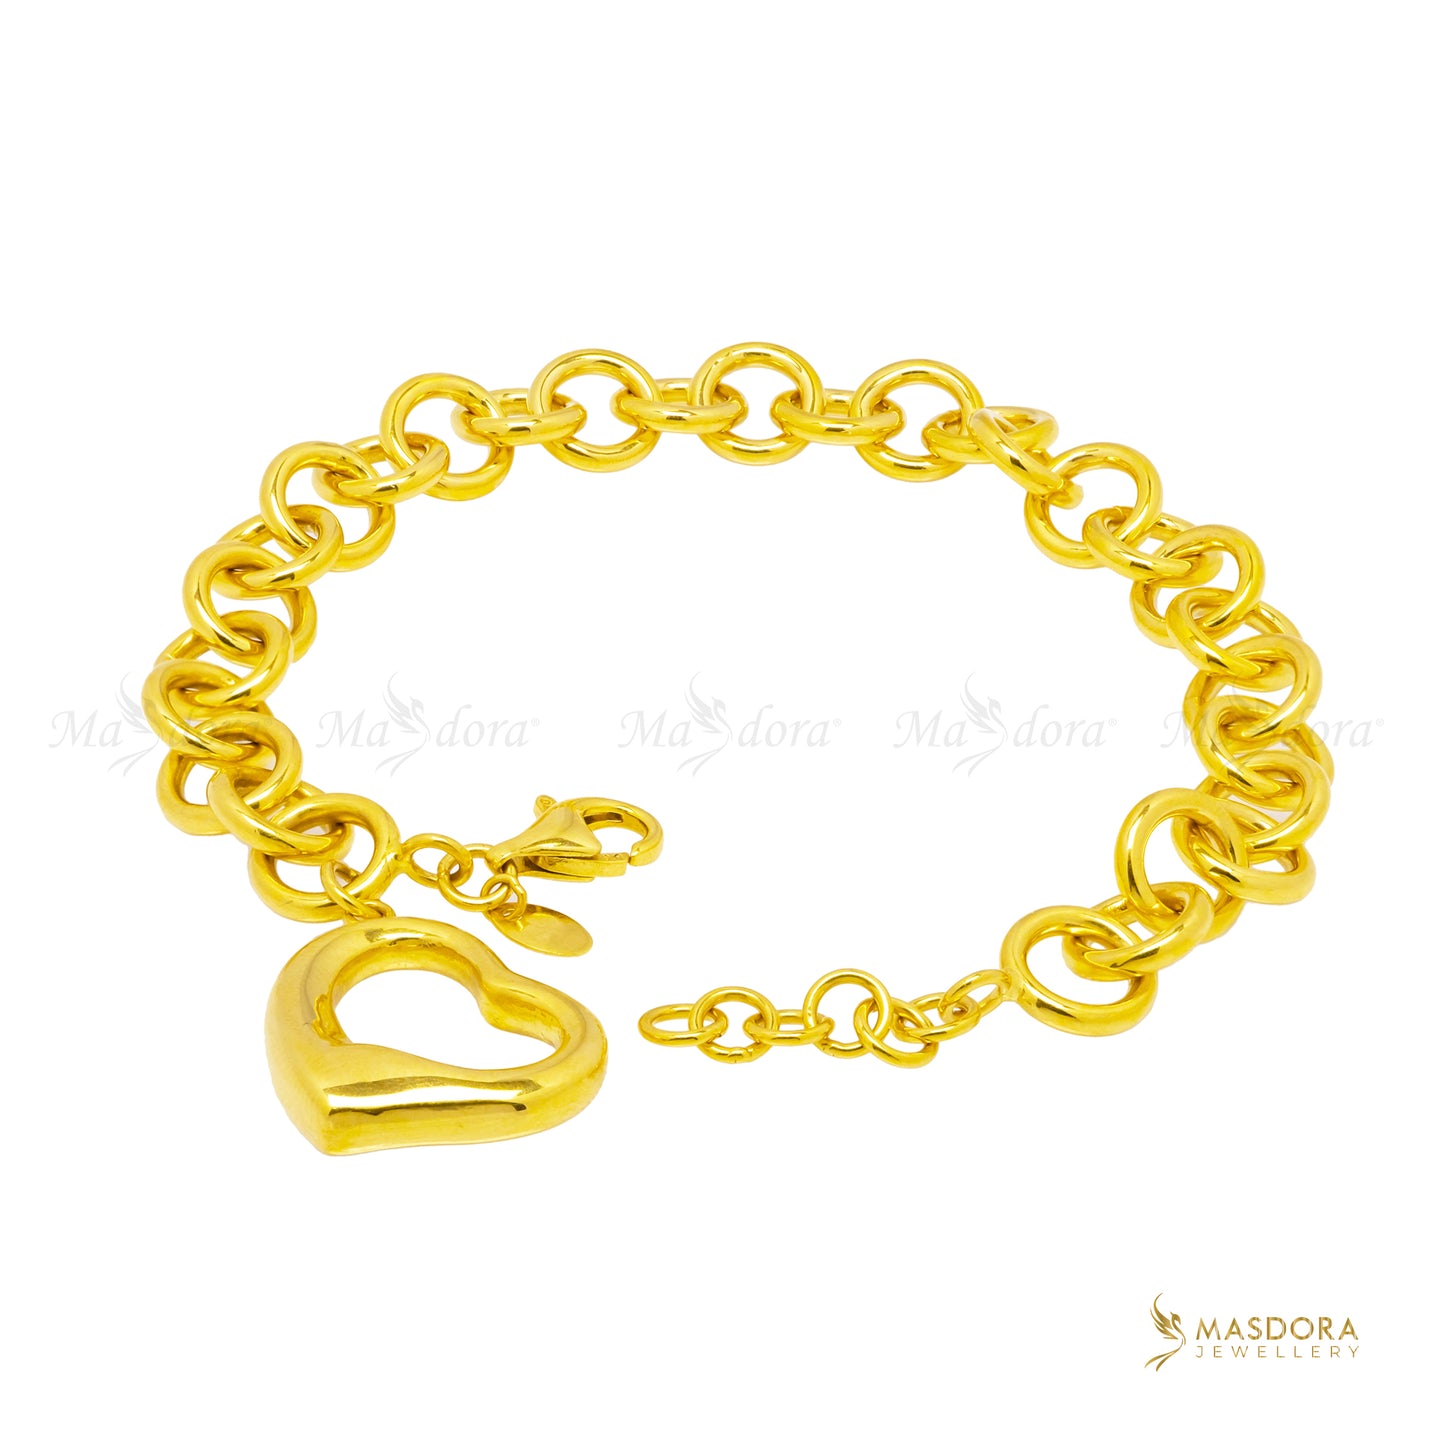 MASDORA Gelang Emas Exclusive Sincero Links/Exclusive Sincero Links Bracelet (Emas 916)